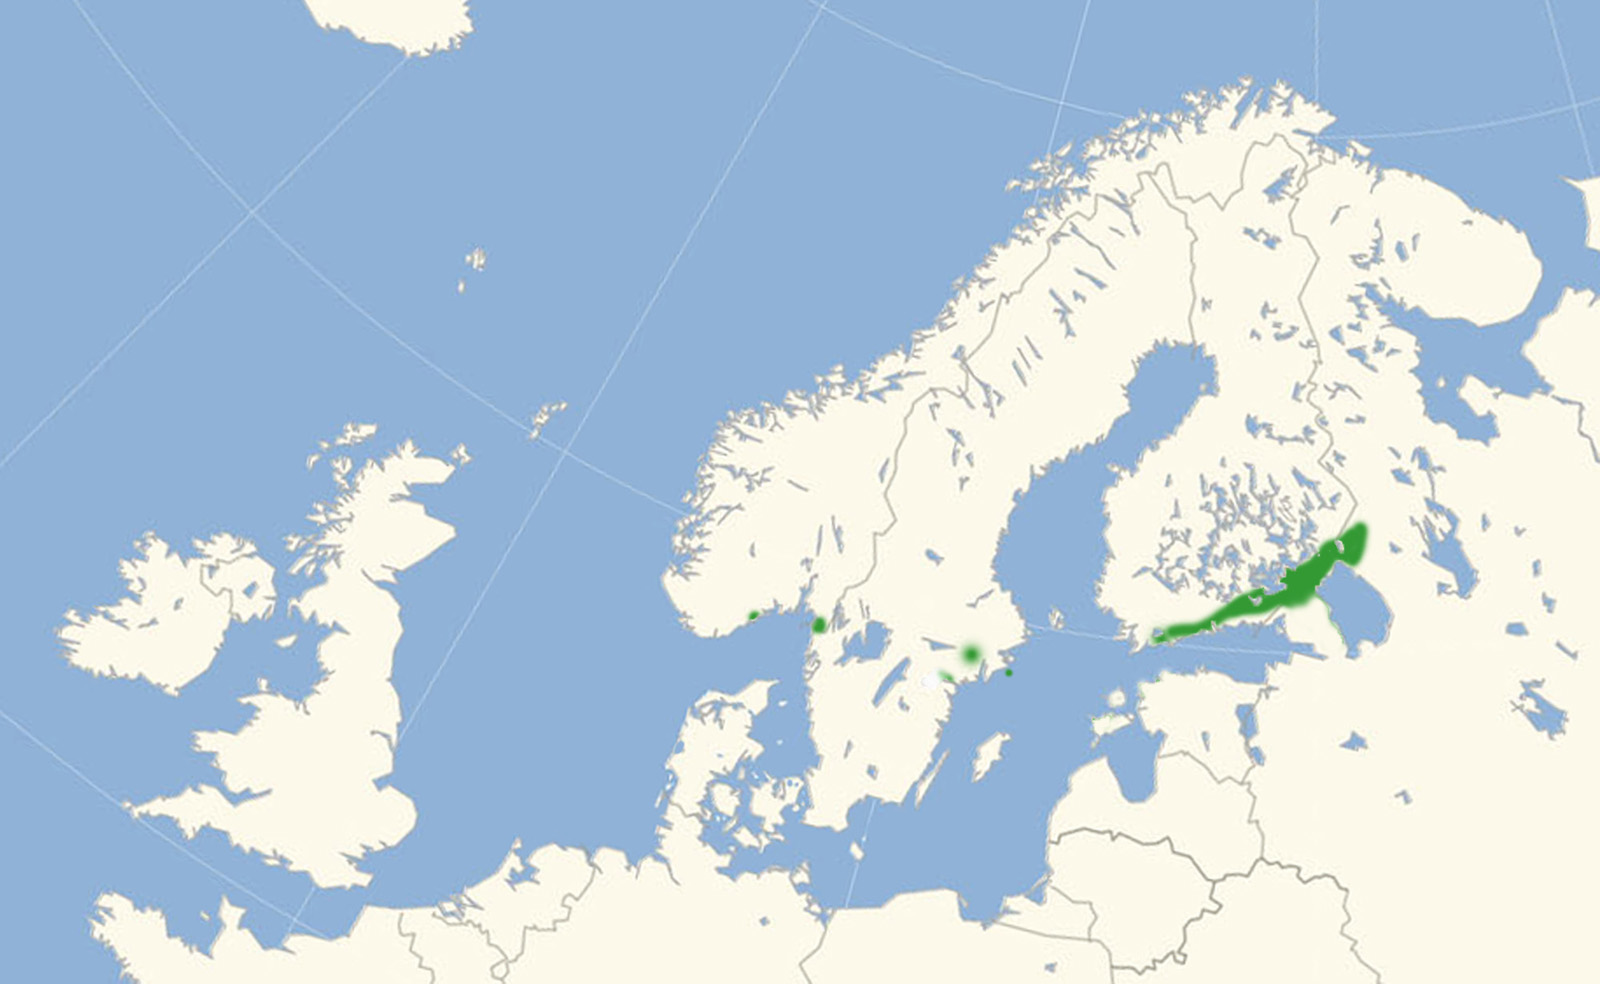 Stenurtblåfugl, Scolitantides orion udbredelse i Nordeuropa.